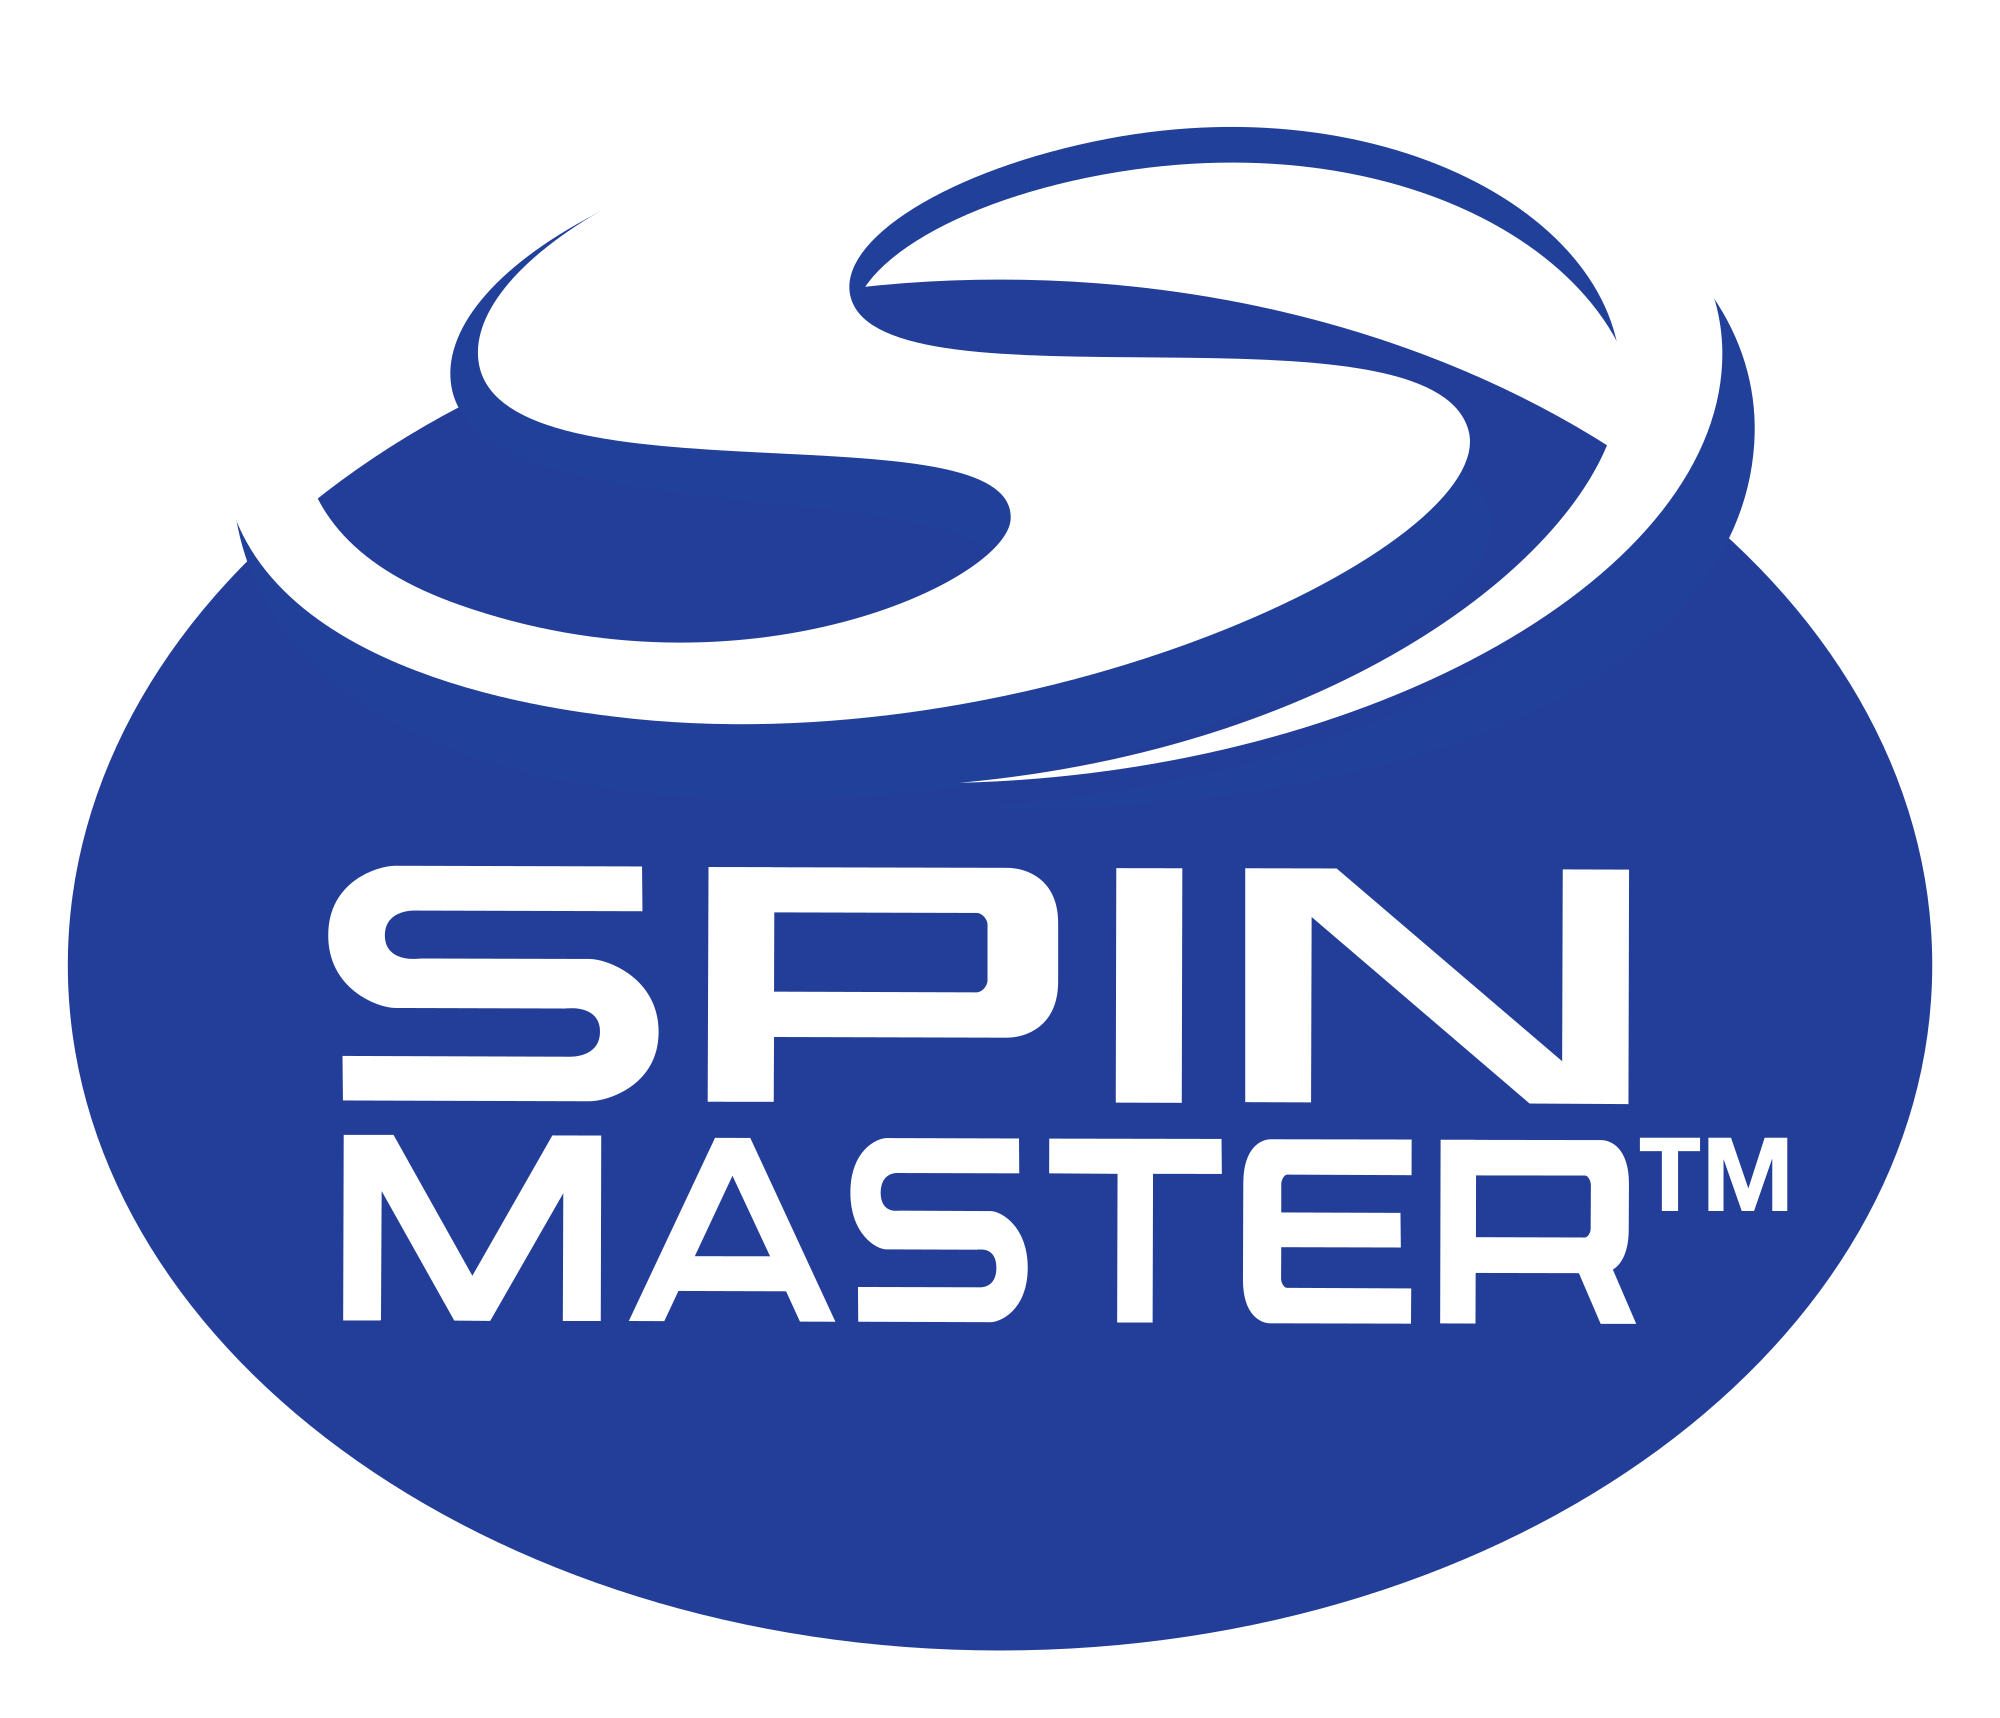 Spin Master - company